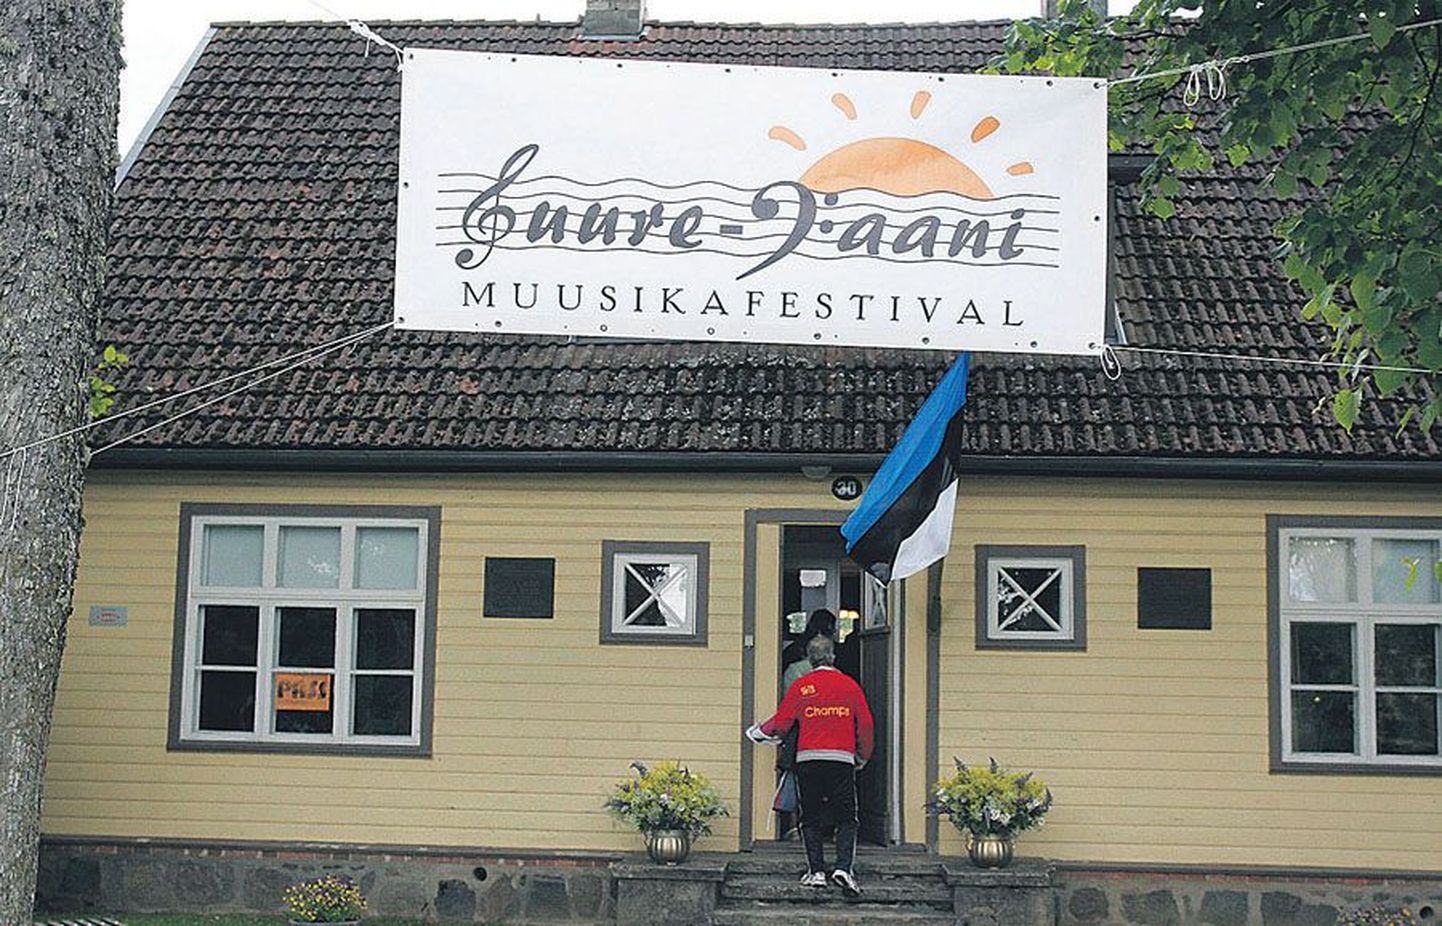 Suure-Jaani muusikafestival täidab suvel väikelinnas terve nädala, meelitades sinna kuulajaid kogu Eestist ja kaugemaltki.